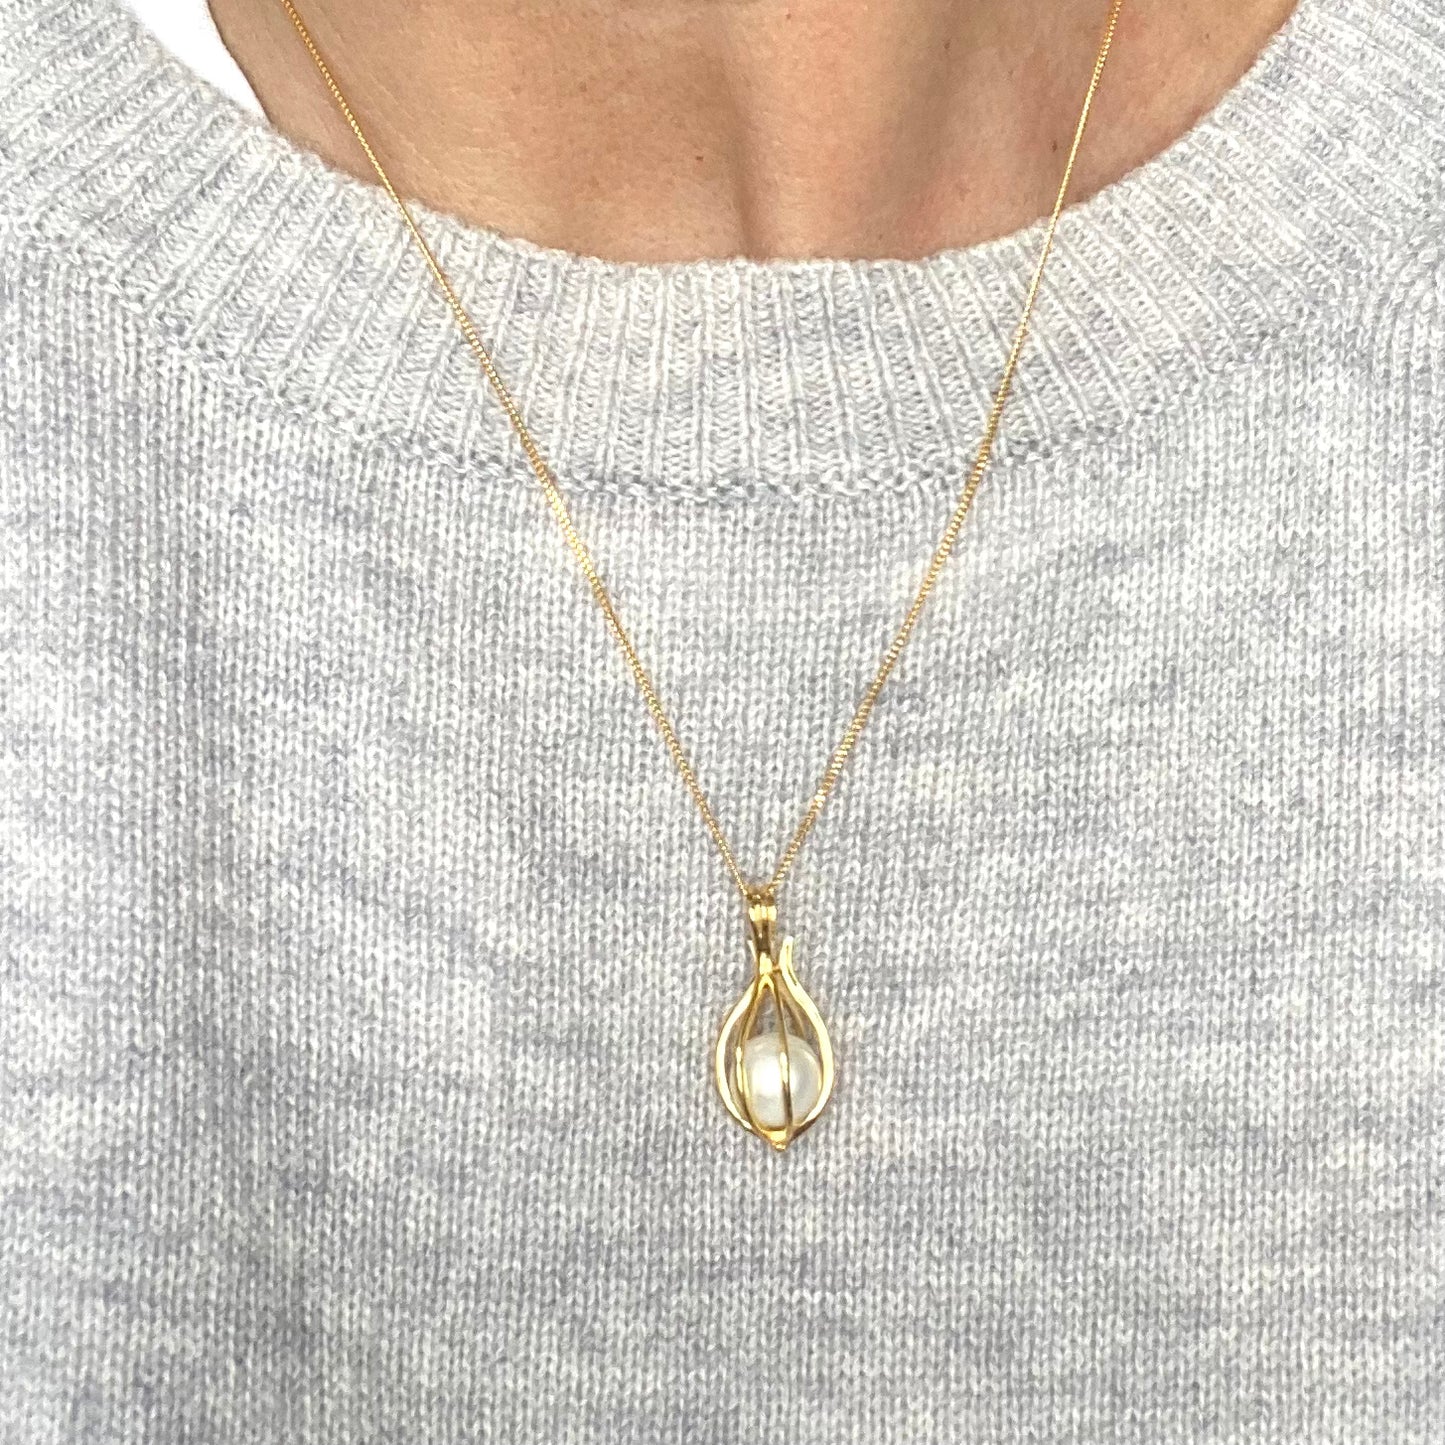 Secret door gold pendant with pearl